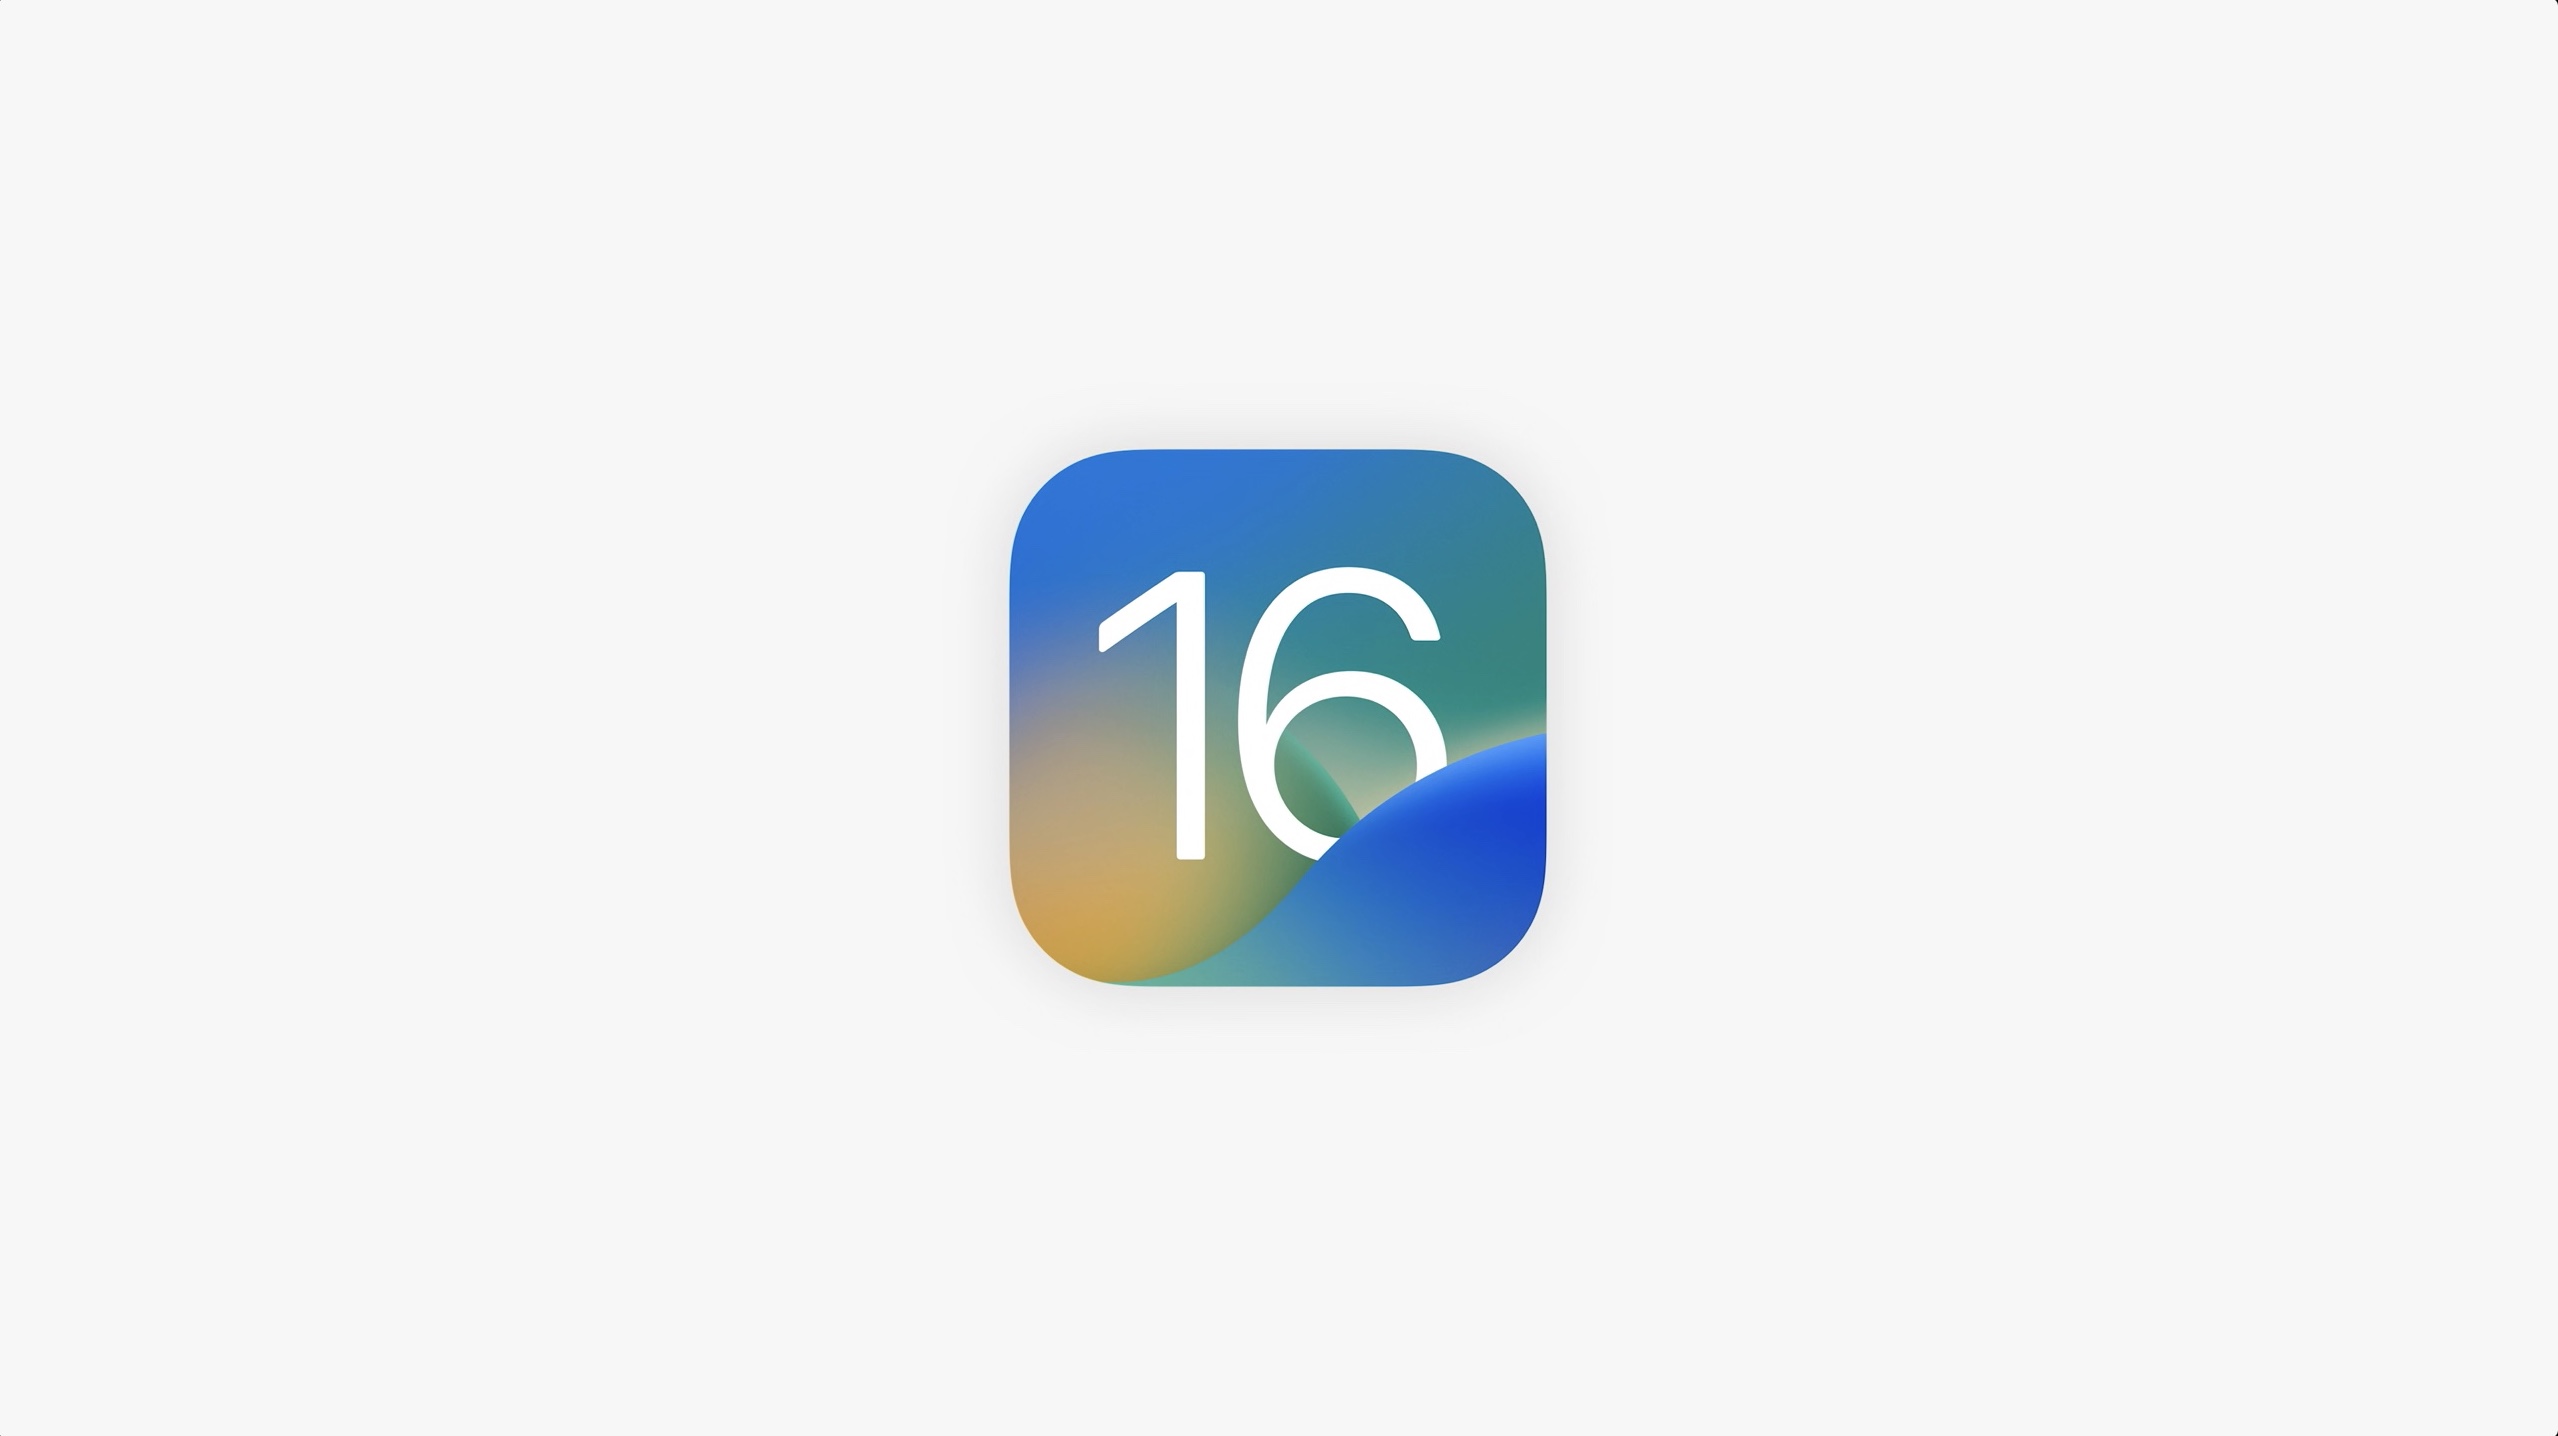 L'icône iOS 16 est placée sur un fond gris clair solide dans cette image d'Apple